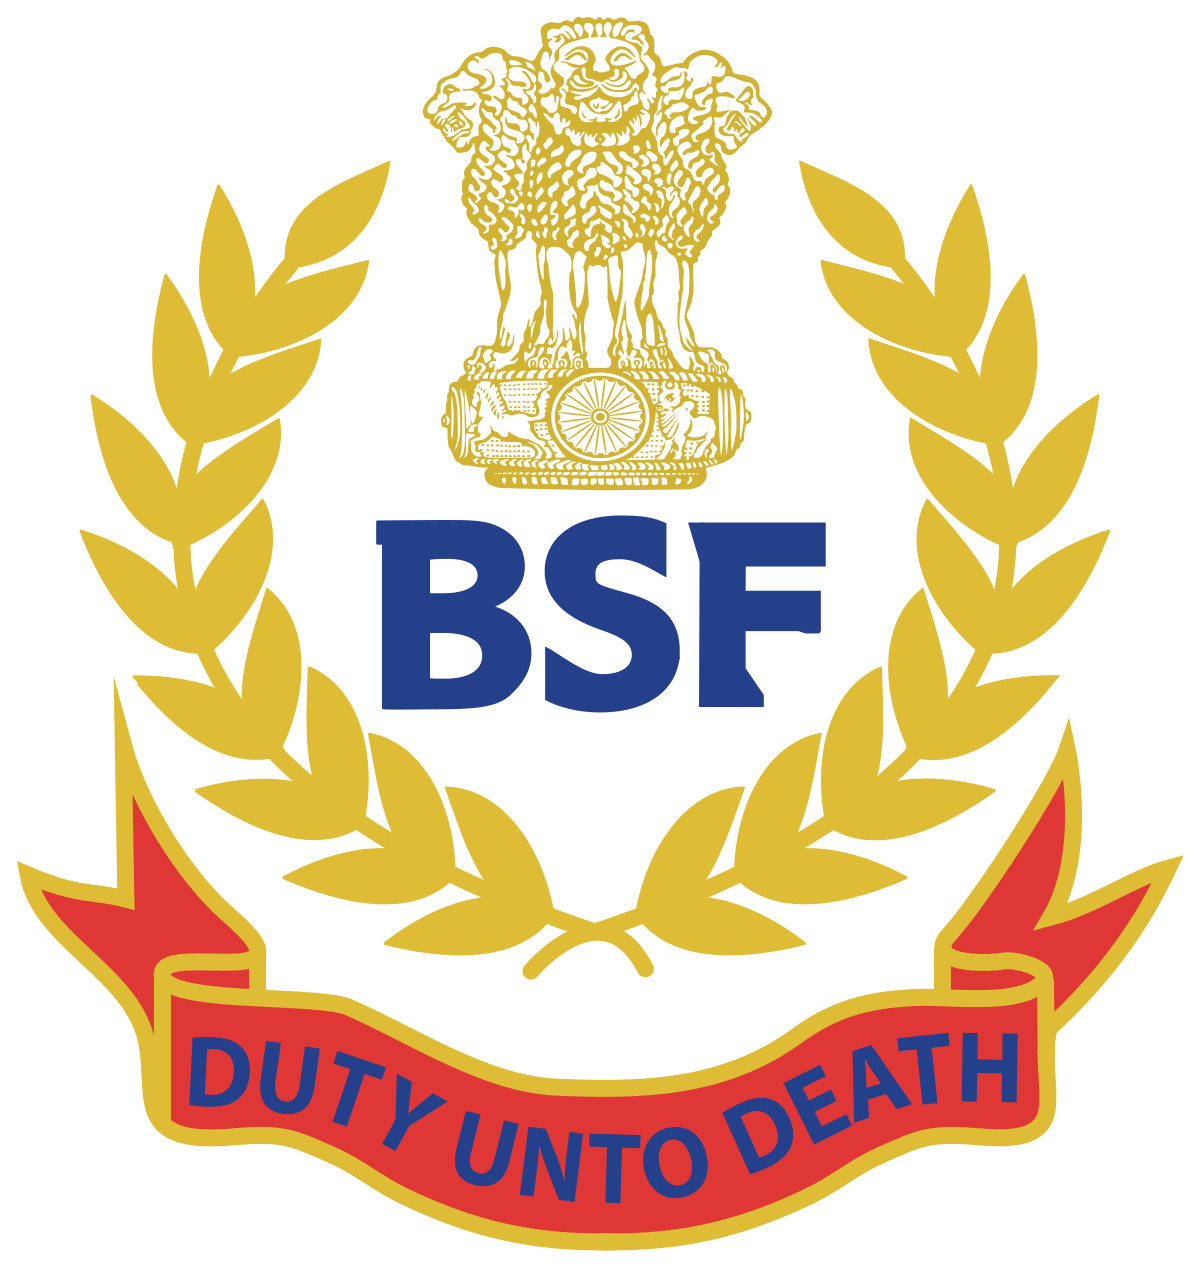 BSF India